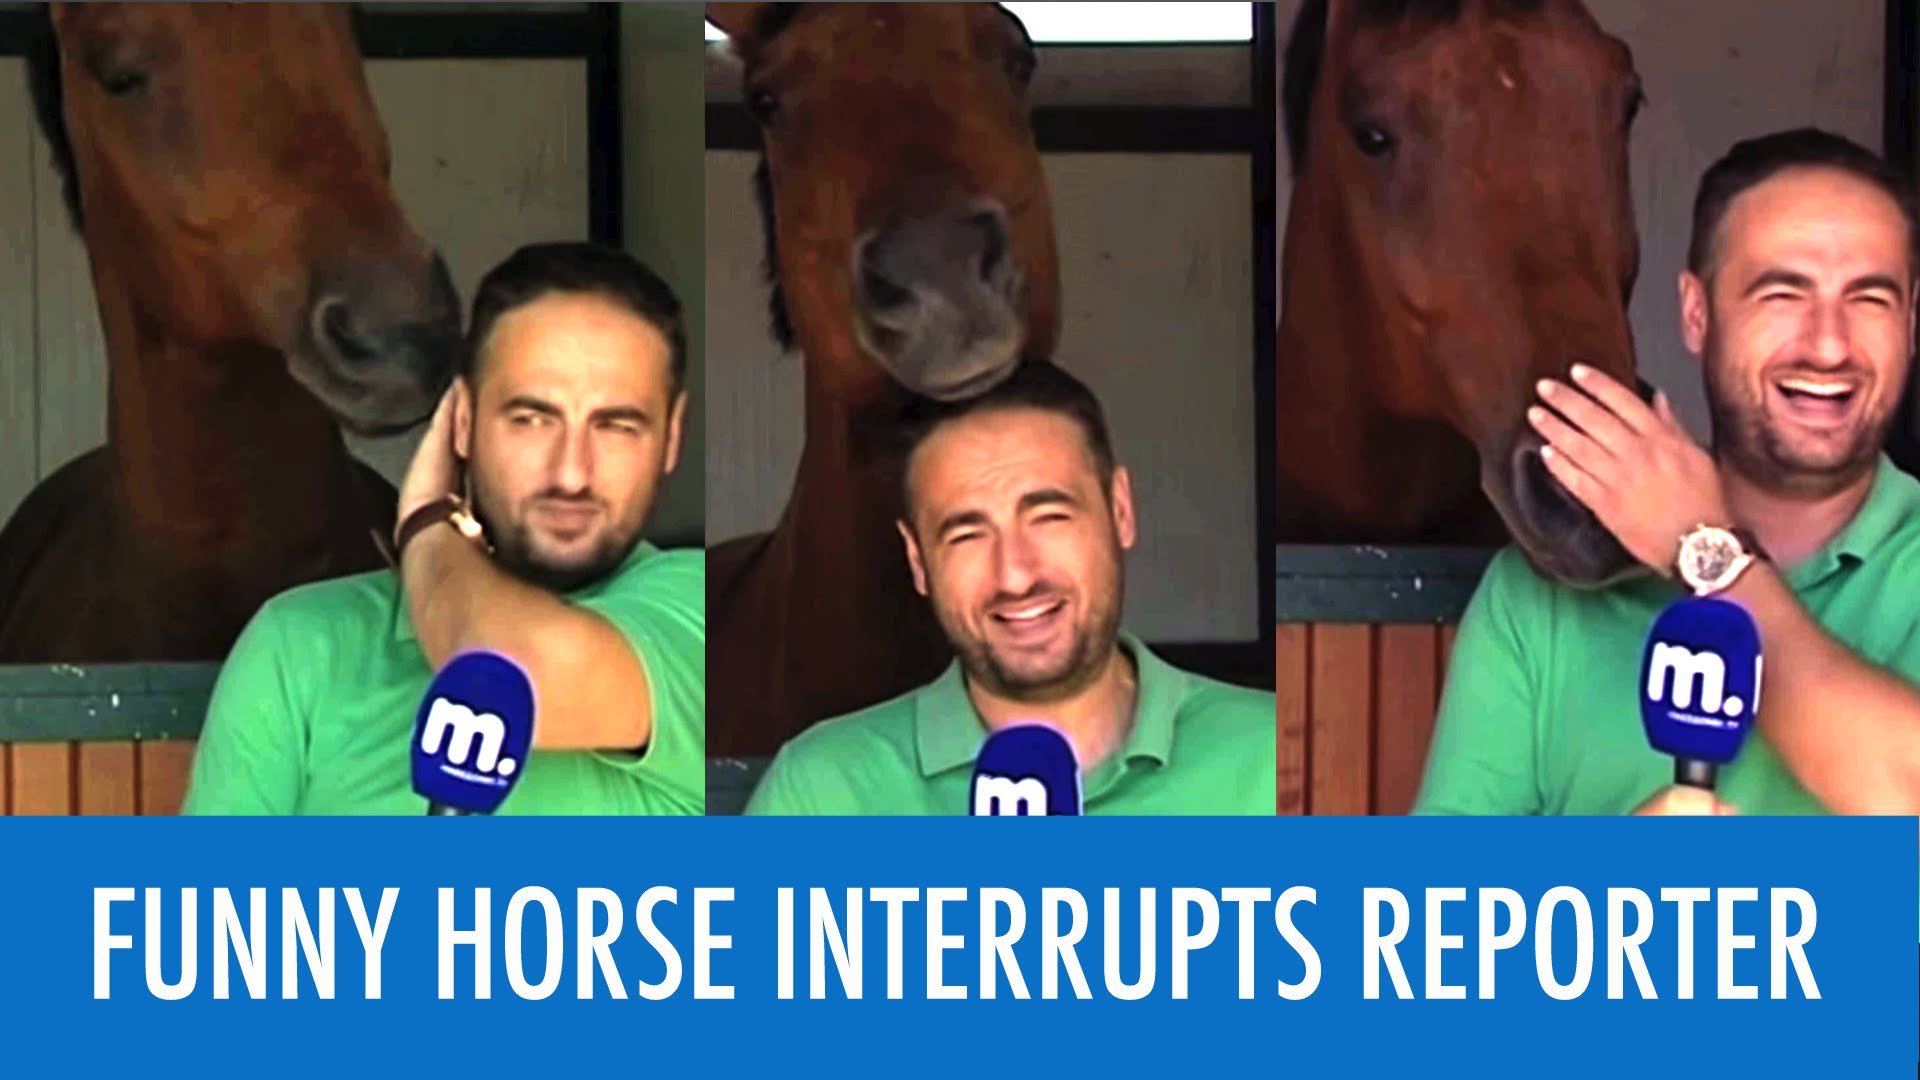 Кінь втрутився і зірвав репортаж журналісту (Відео)